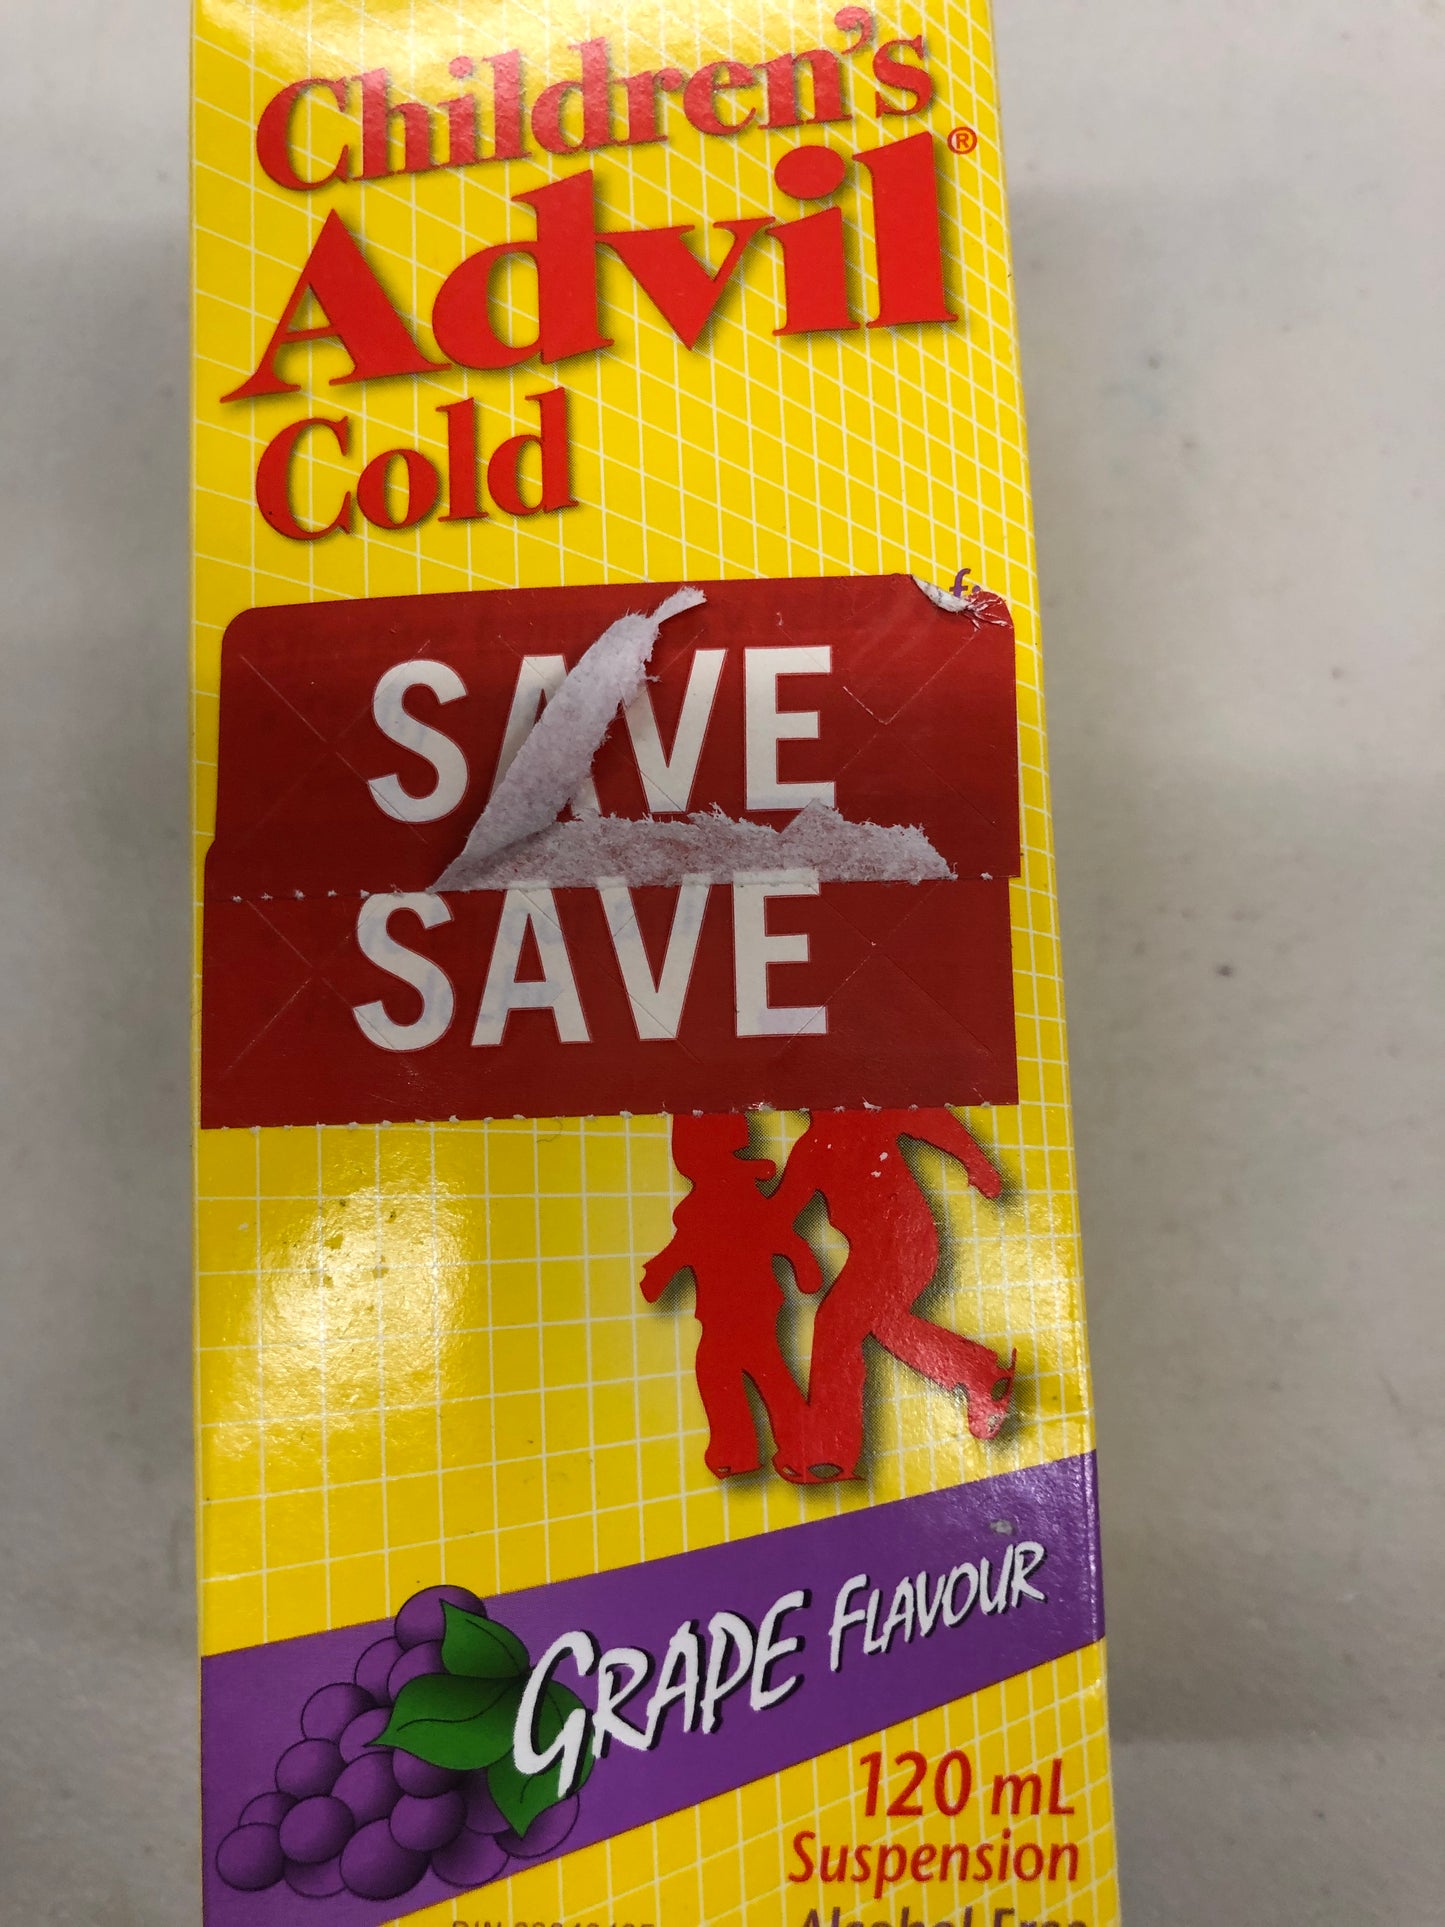 Children's advil cold